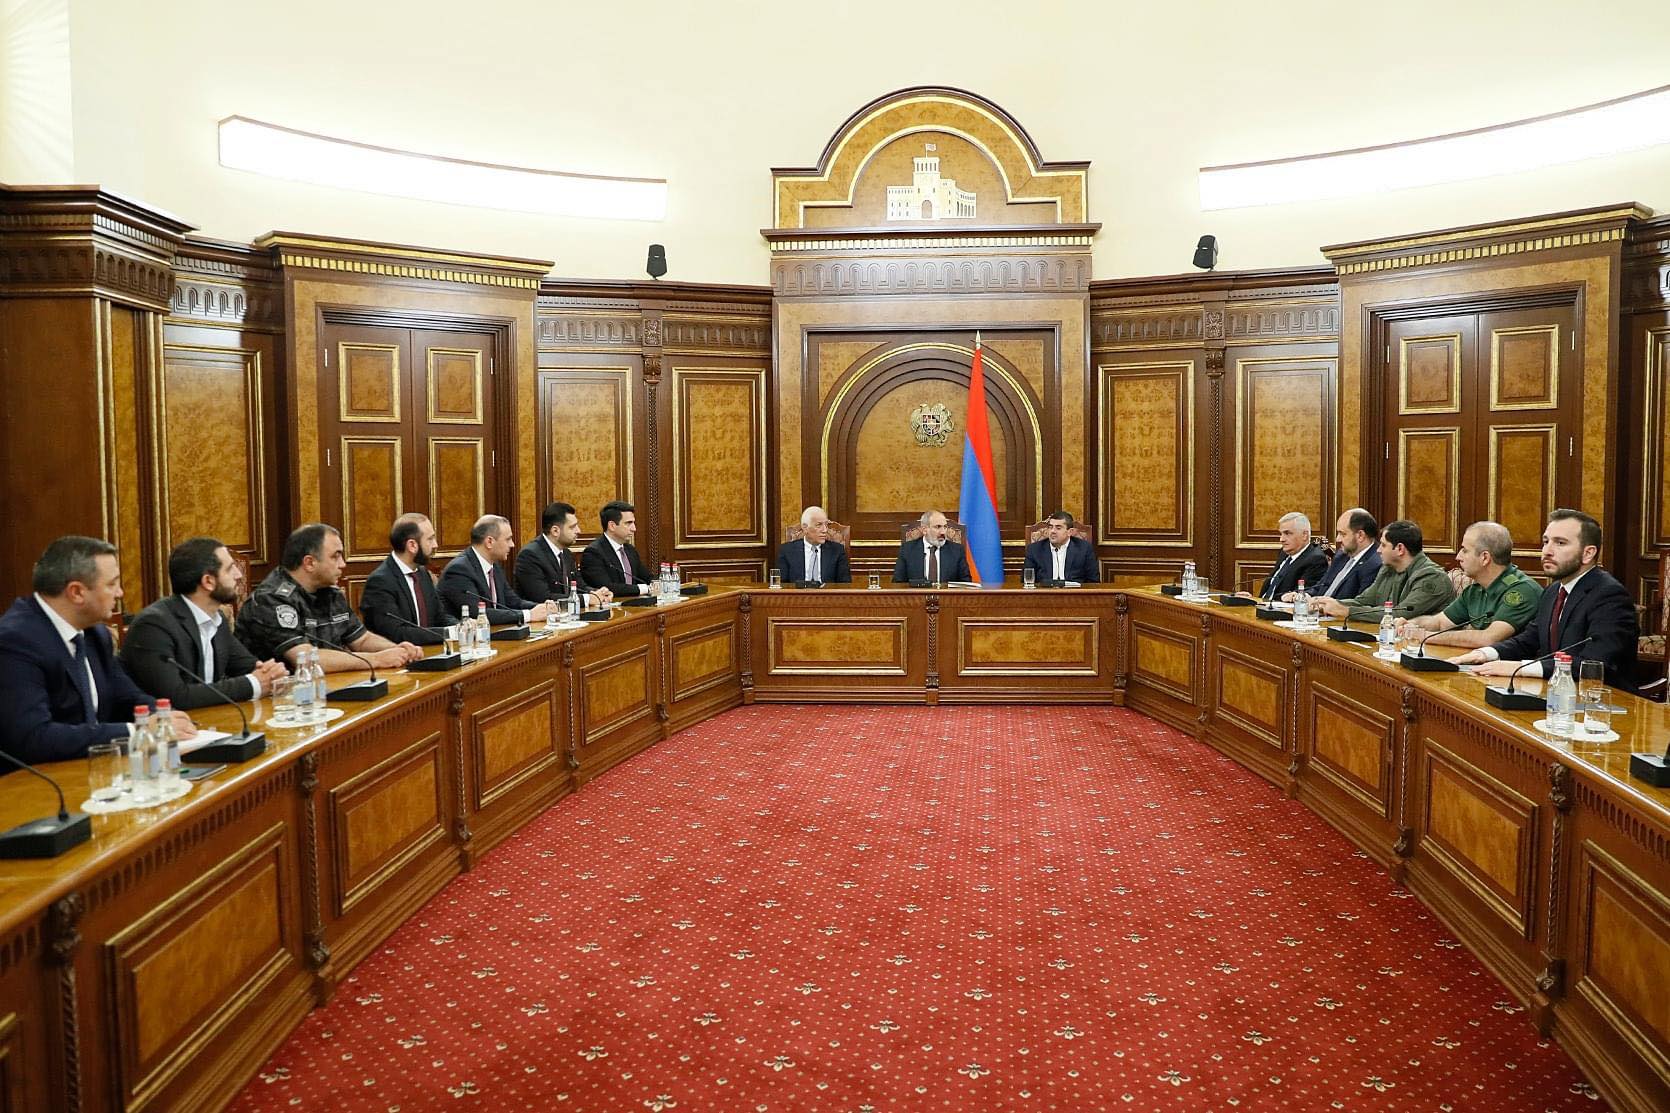 ԱՀ նախագահը Երևանում մասնակցել է ԱԽ նիստին և նորից փաստել՝ այս պահին Արցախի կարգավիճակի առնչությանբ որևէ թուղթ չի քննարկվում